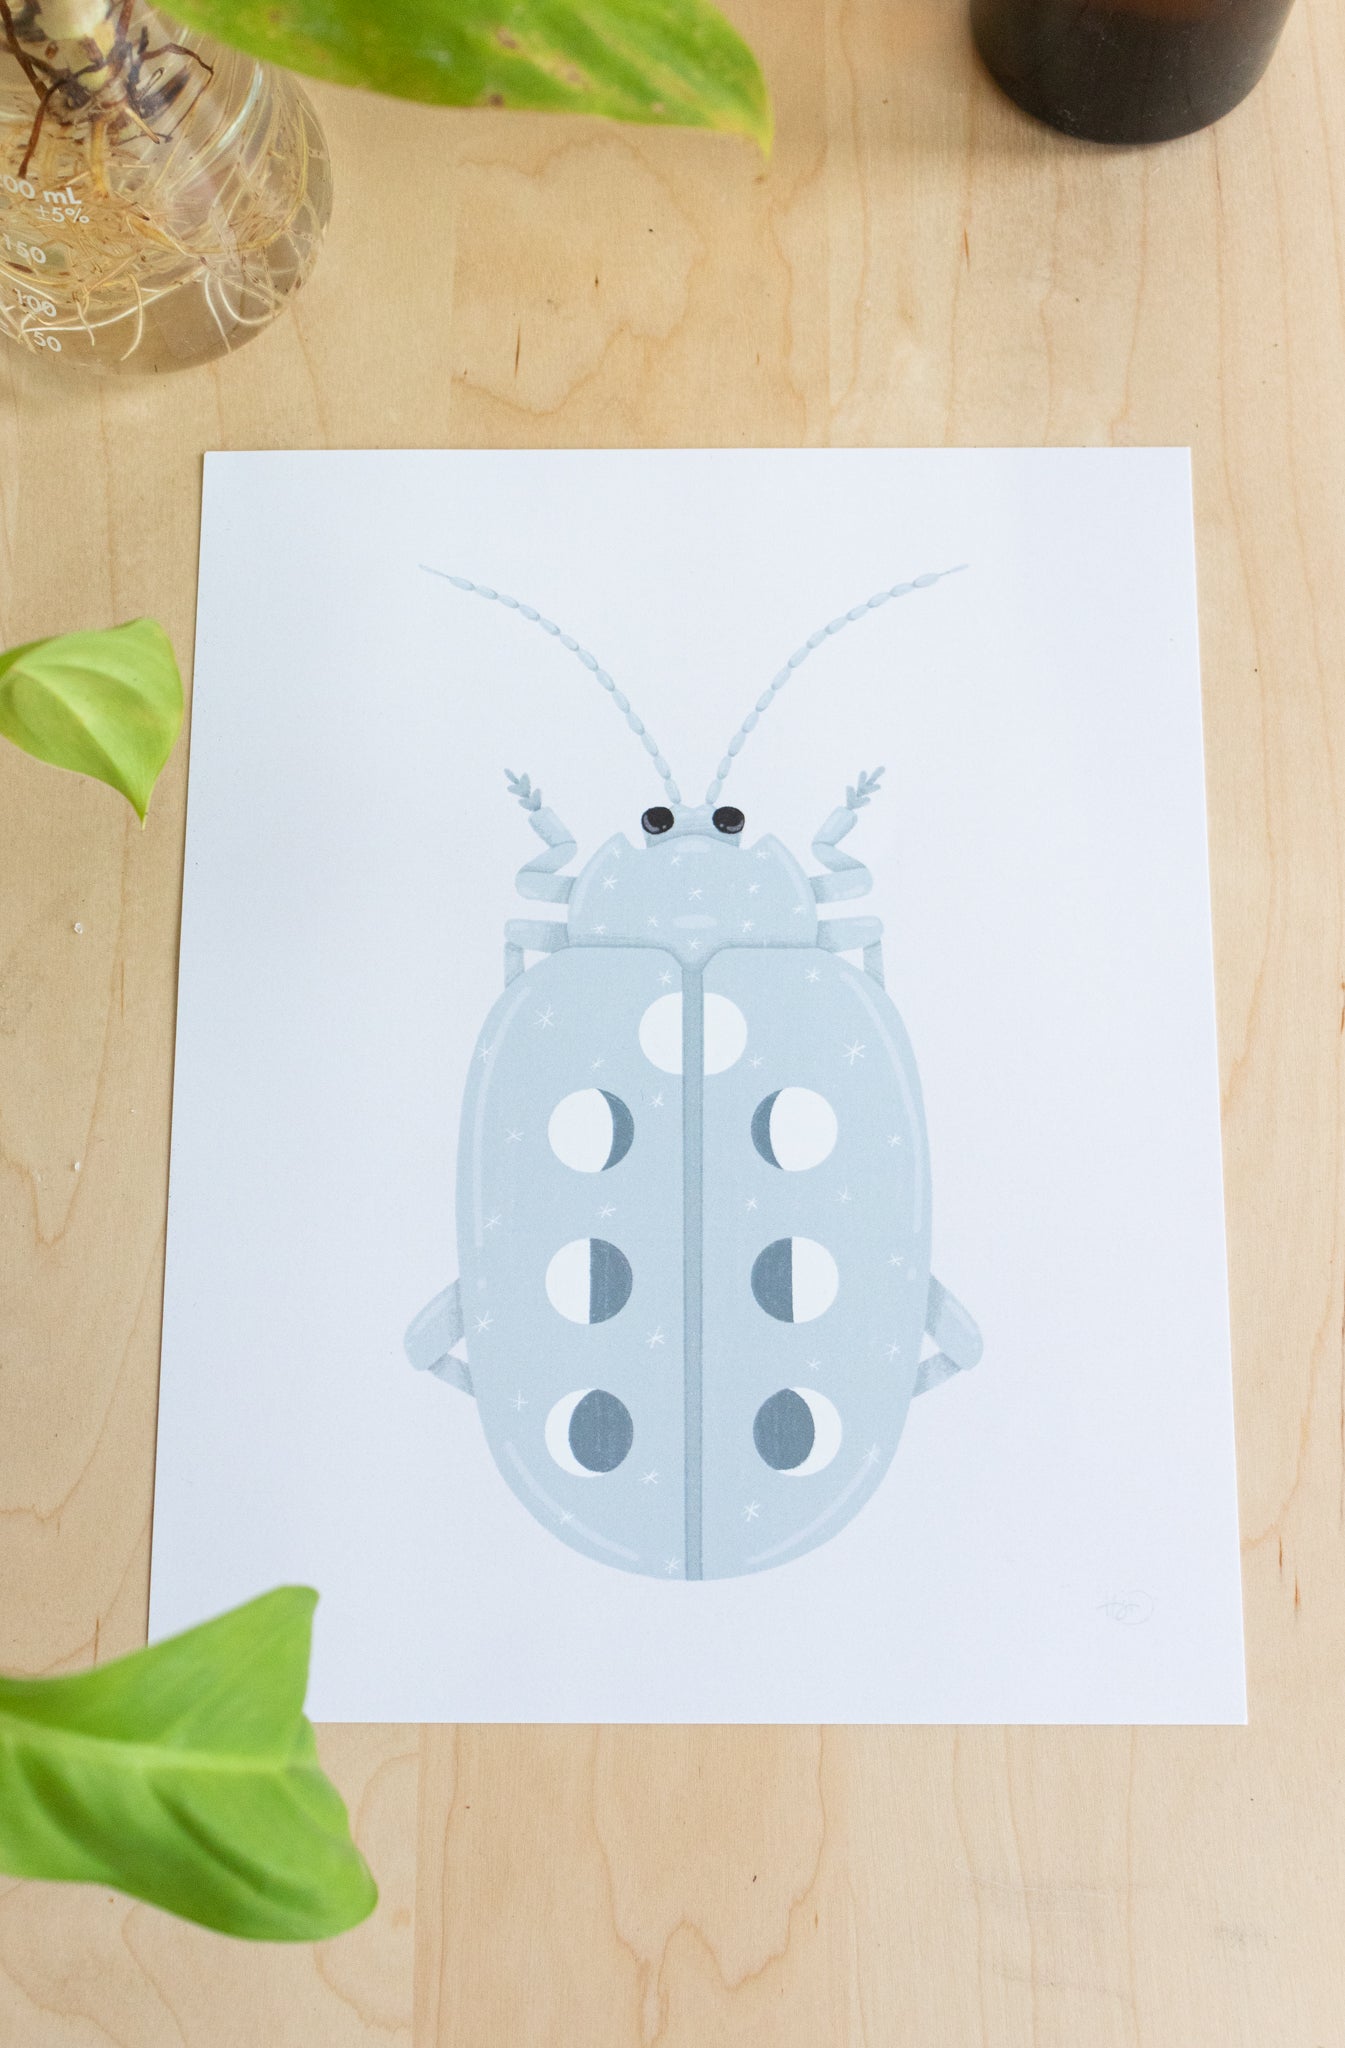 Lunar Phase Beetle Print